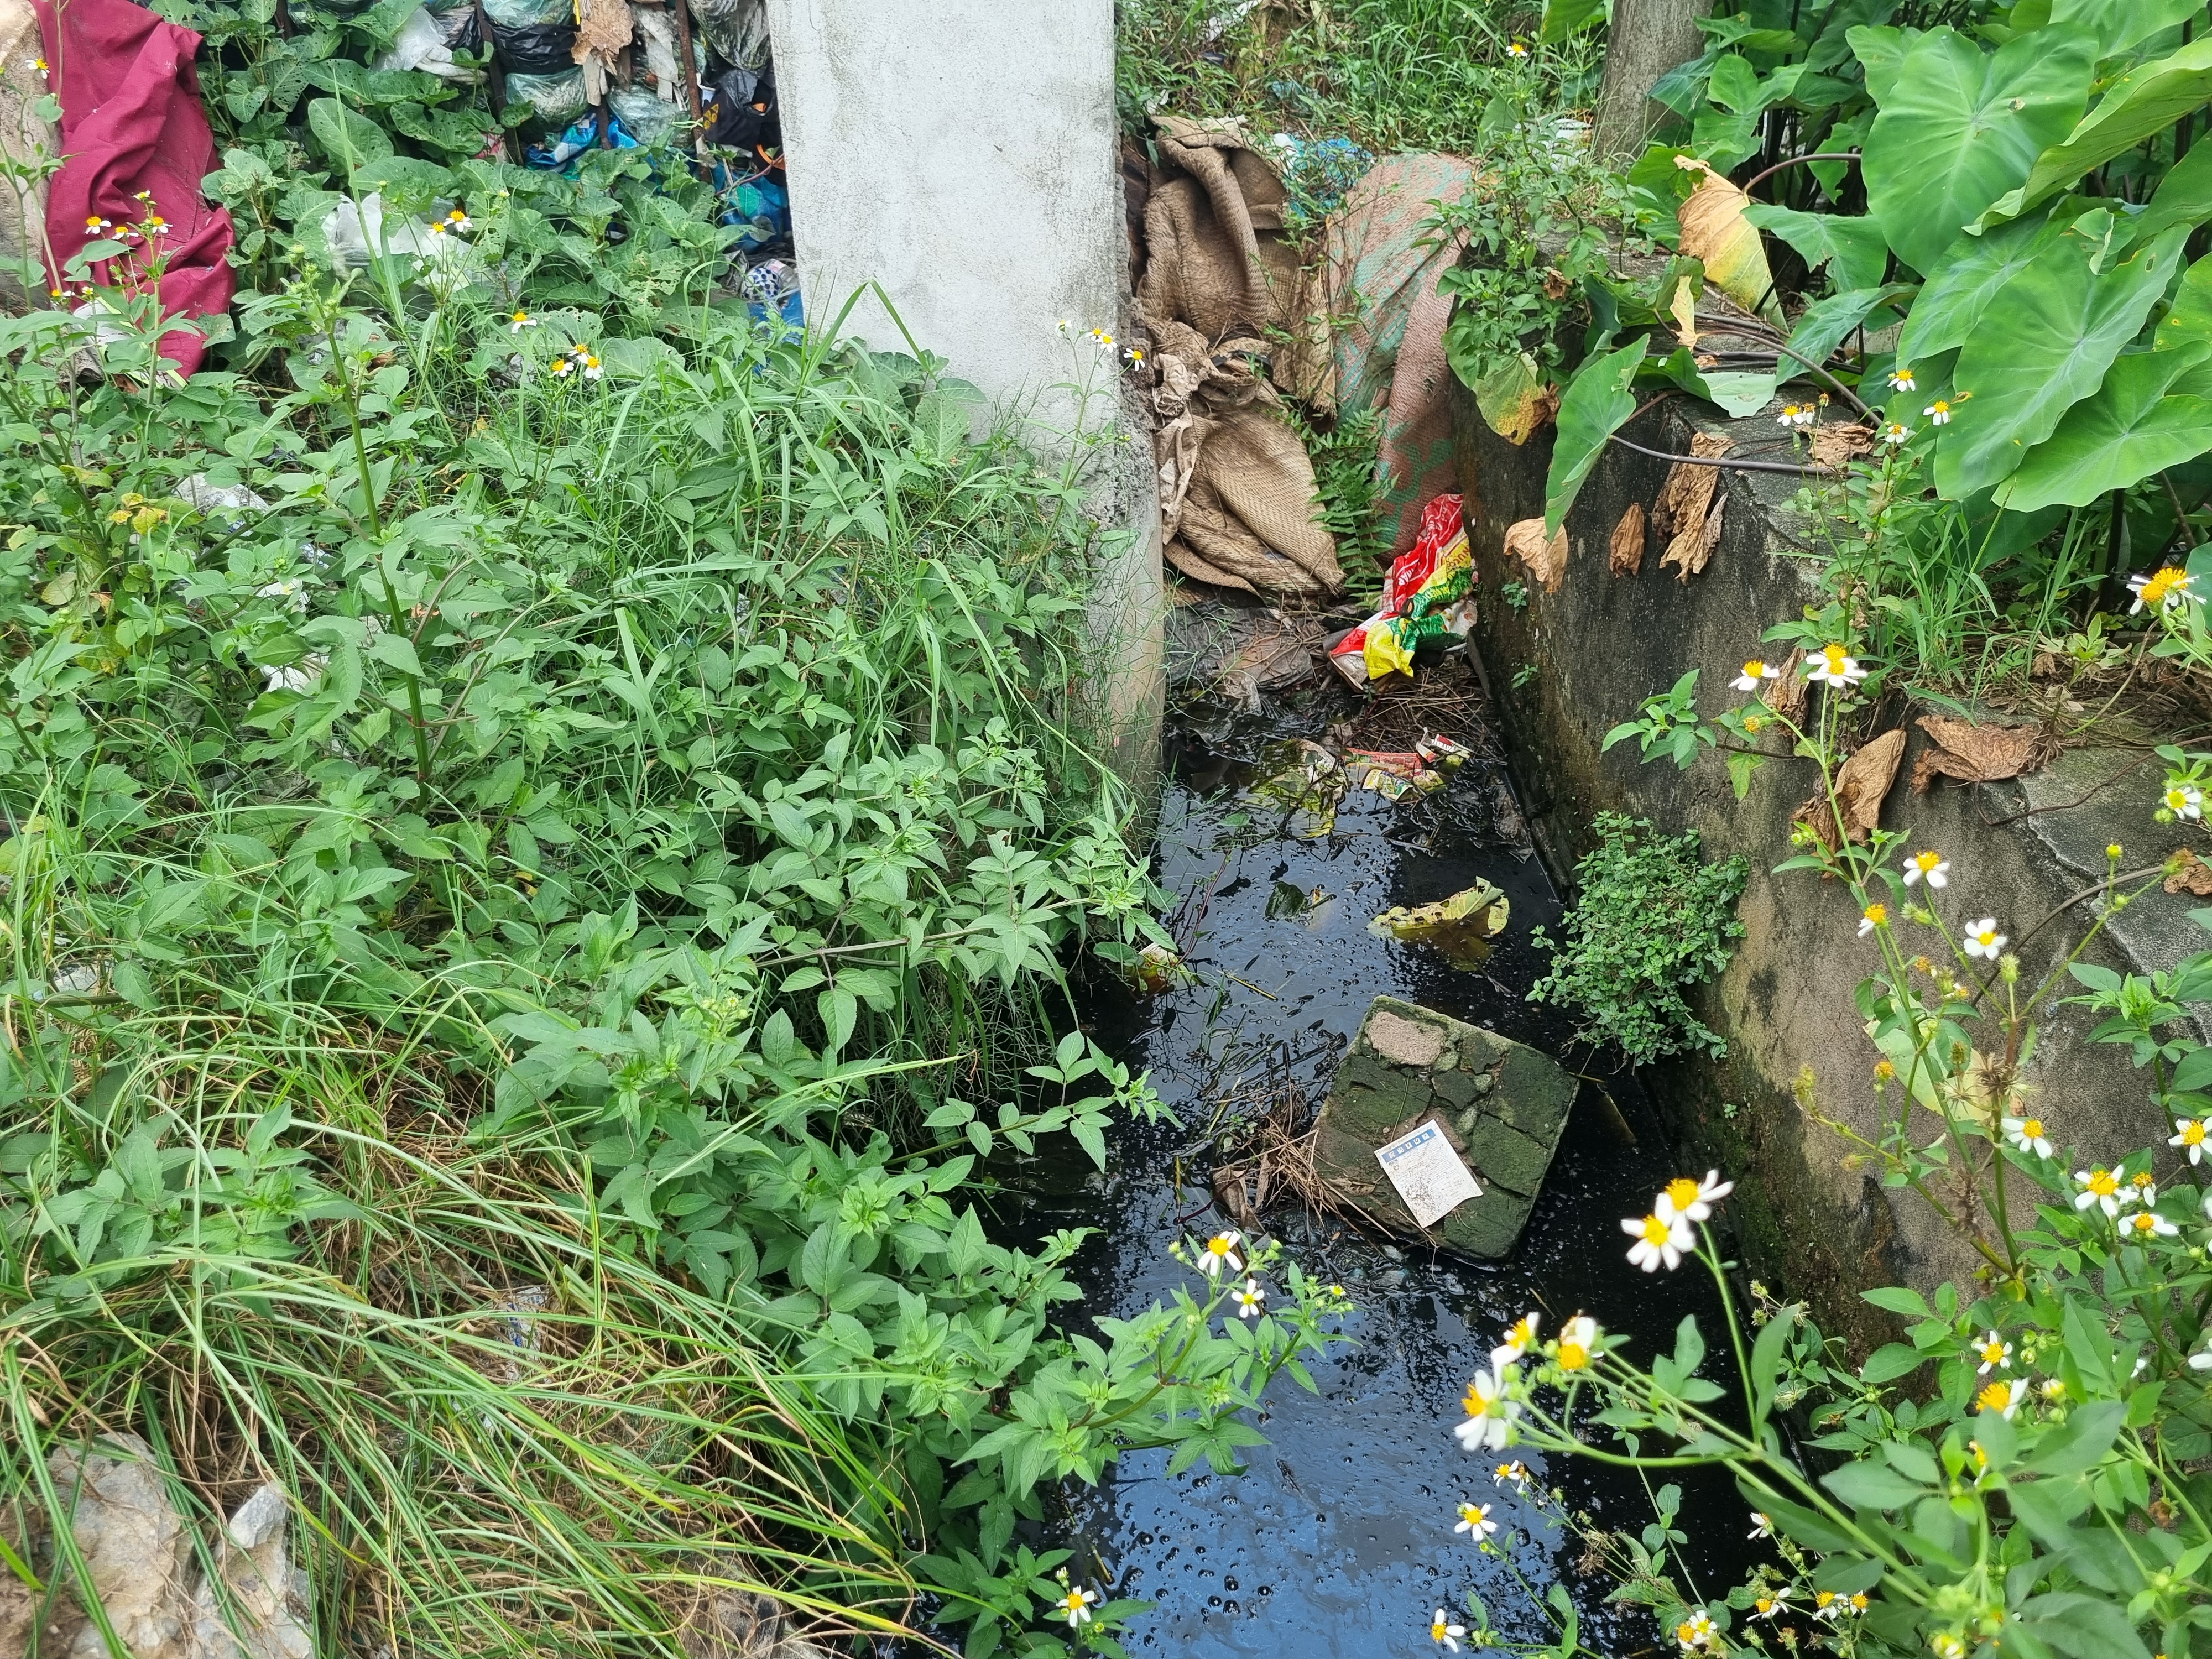 “Việc nước ở bãi rác chảy xuống mương máng là không tránh được, nhất là mùa mưa. Hiện tại, quy hoạch đất của địa phương không còn khu vực nào phù hợp để di chuyển nên vẫn đợi phương án, hỗ trợ từ cấp trên” - ông Tứ nói.